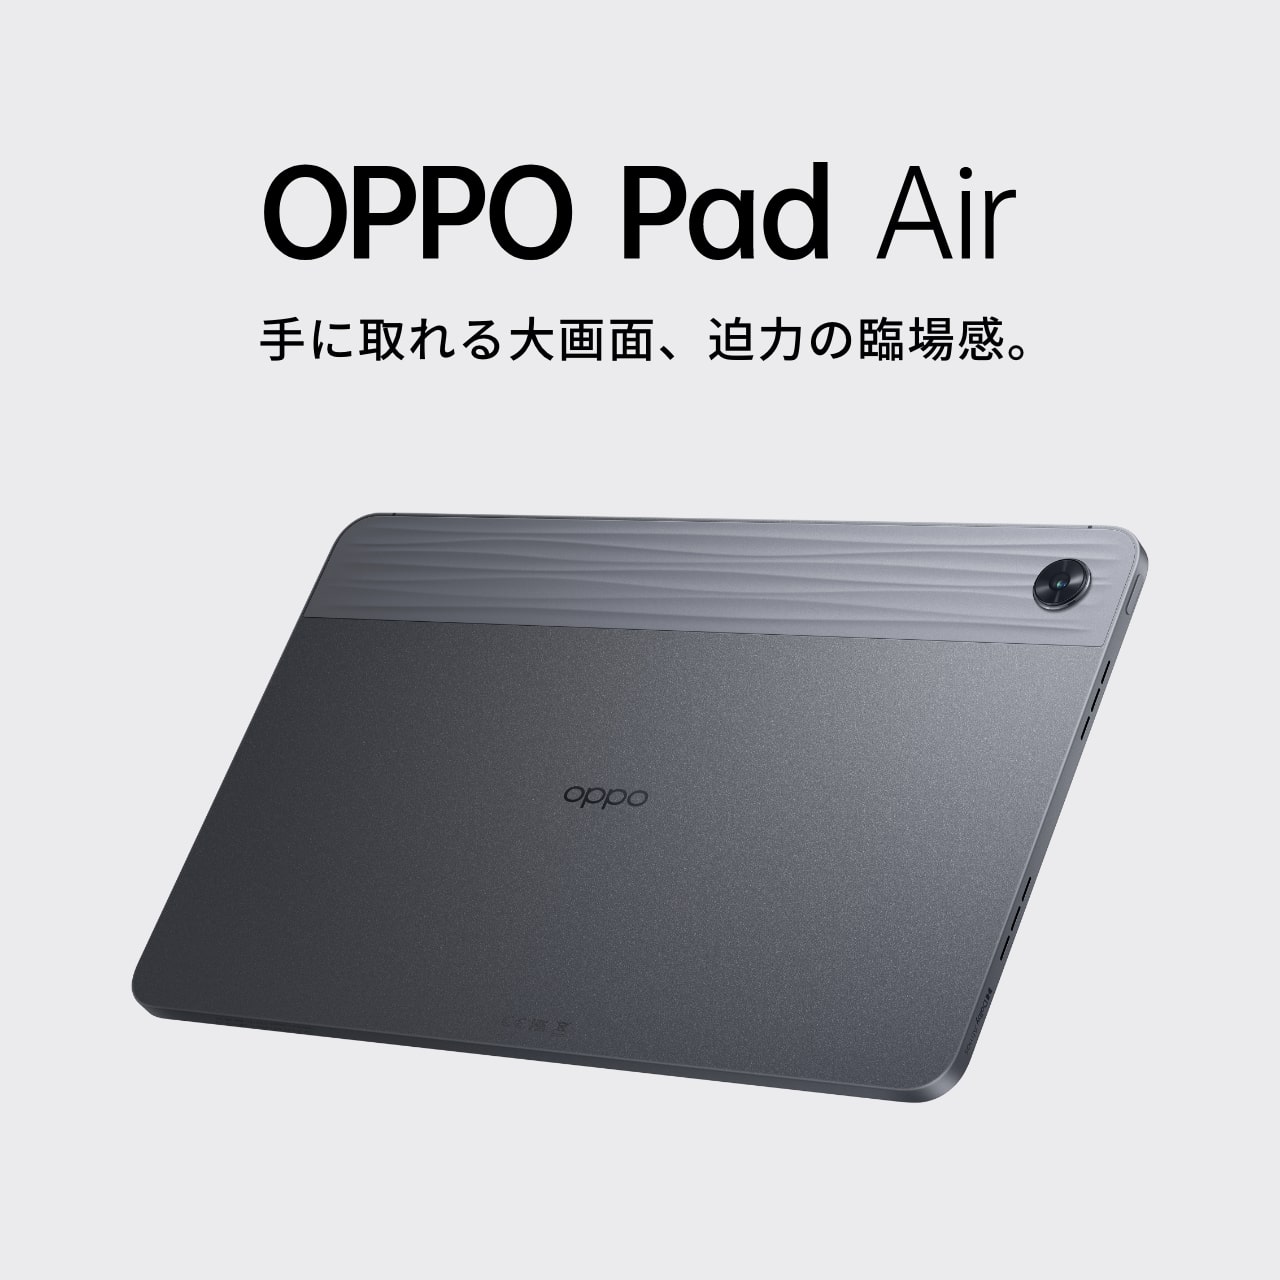 OPPO Pad Air (64GB) | タブレット | OPPO公式オンラインショップ